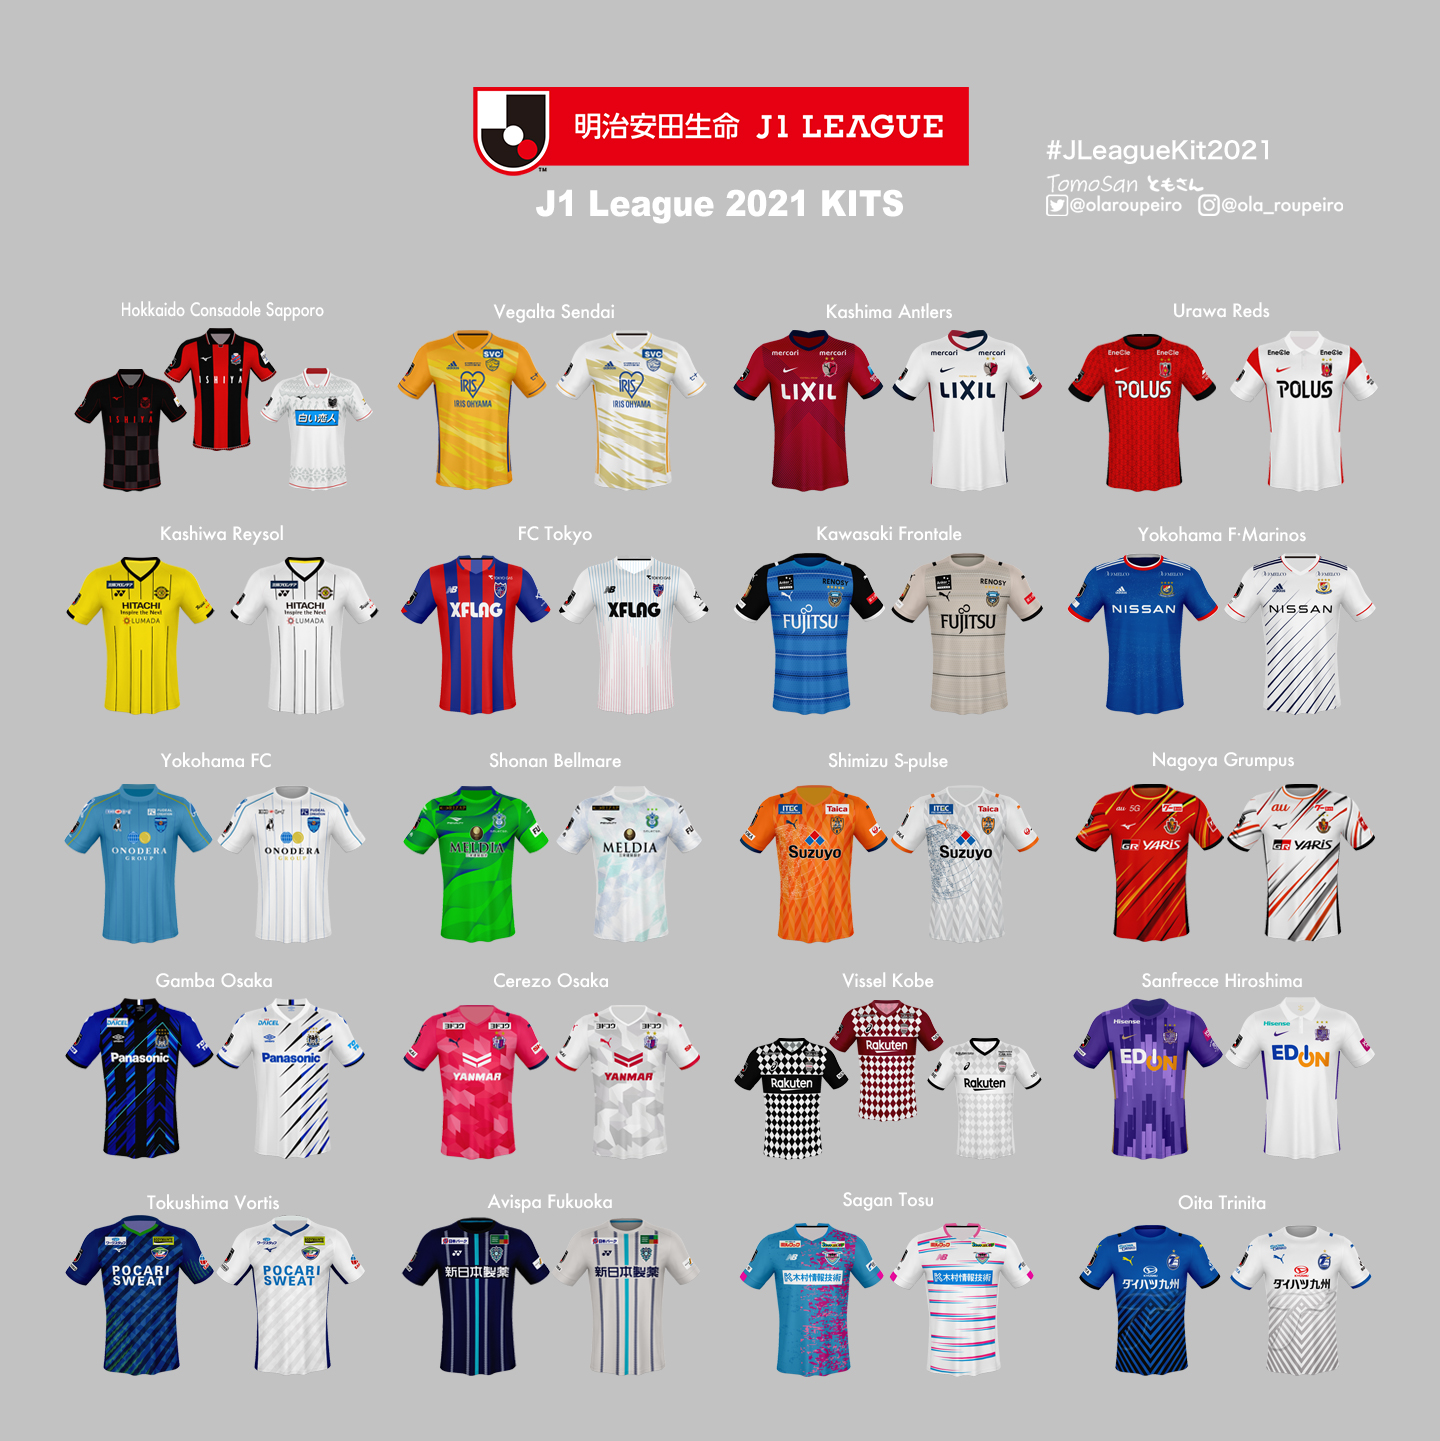 ともさん Tomosan サッカーユニフォームの世界 21 J League All Kits 21シーズンのj1リーグのユニフォームをおさらいしておきましょう Jleague Jリーグ サッカーユニフォームの世界 Jユニ図鑑 T Co Gtersujean Twitter